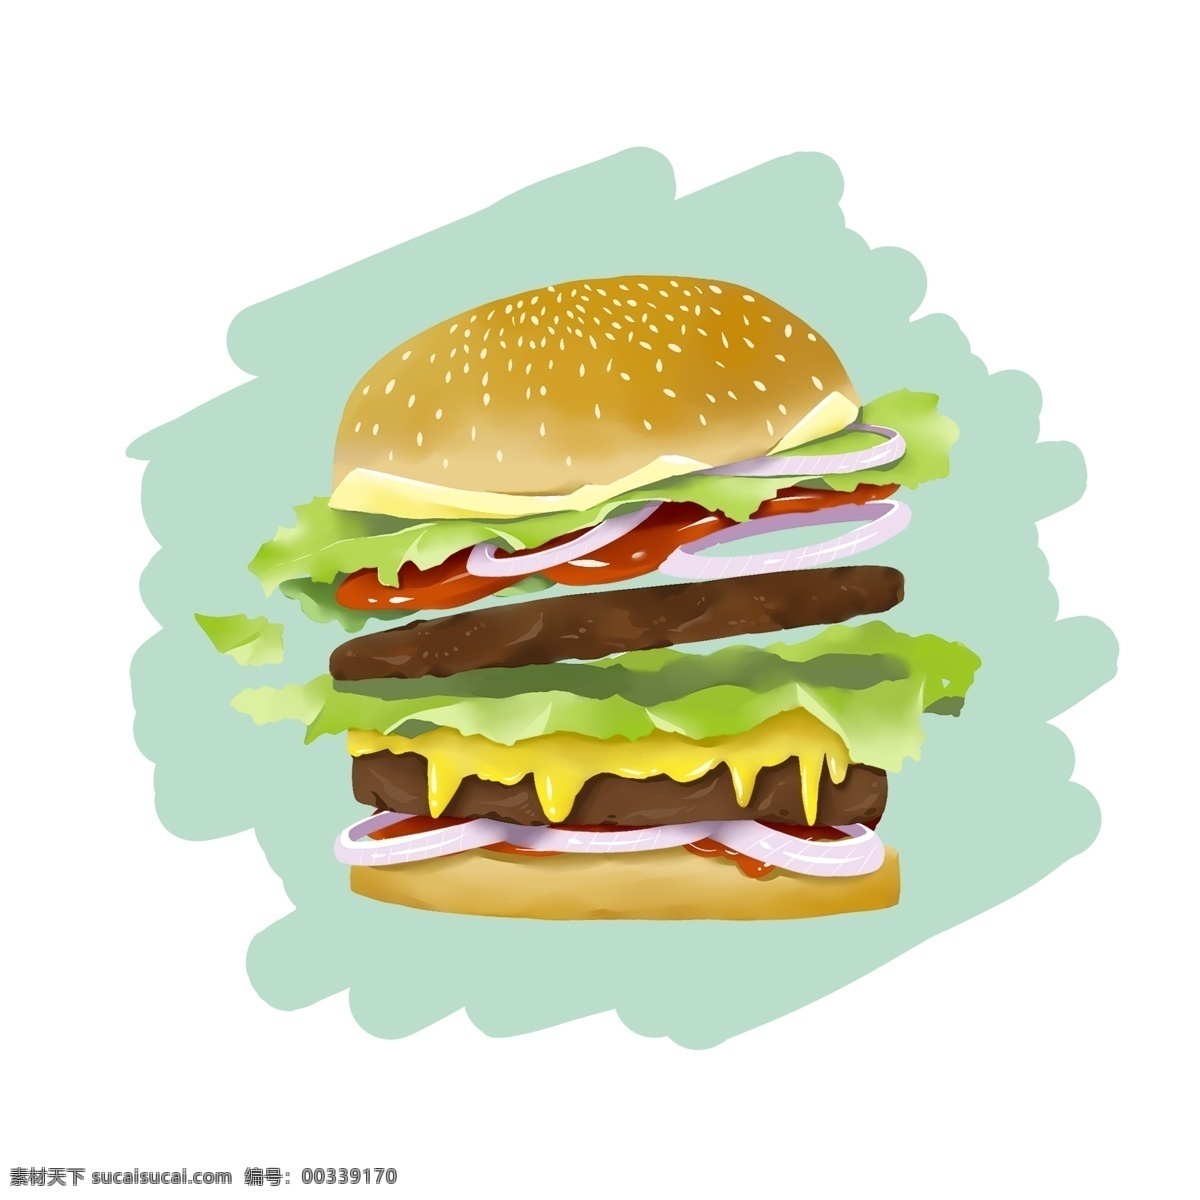 手绘 原创动漫 食物 快餐 食品 牛肉 芝士 汉堡 生菜 原创 汉堡包 hamburger 番茄酱 洋葱圈